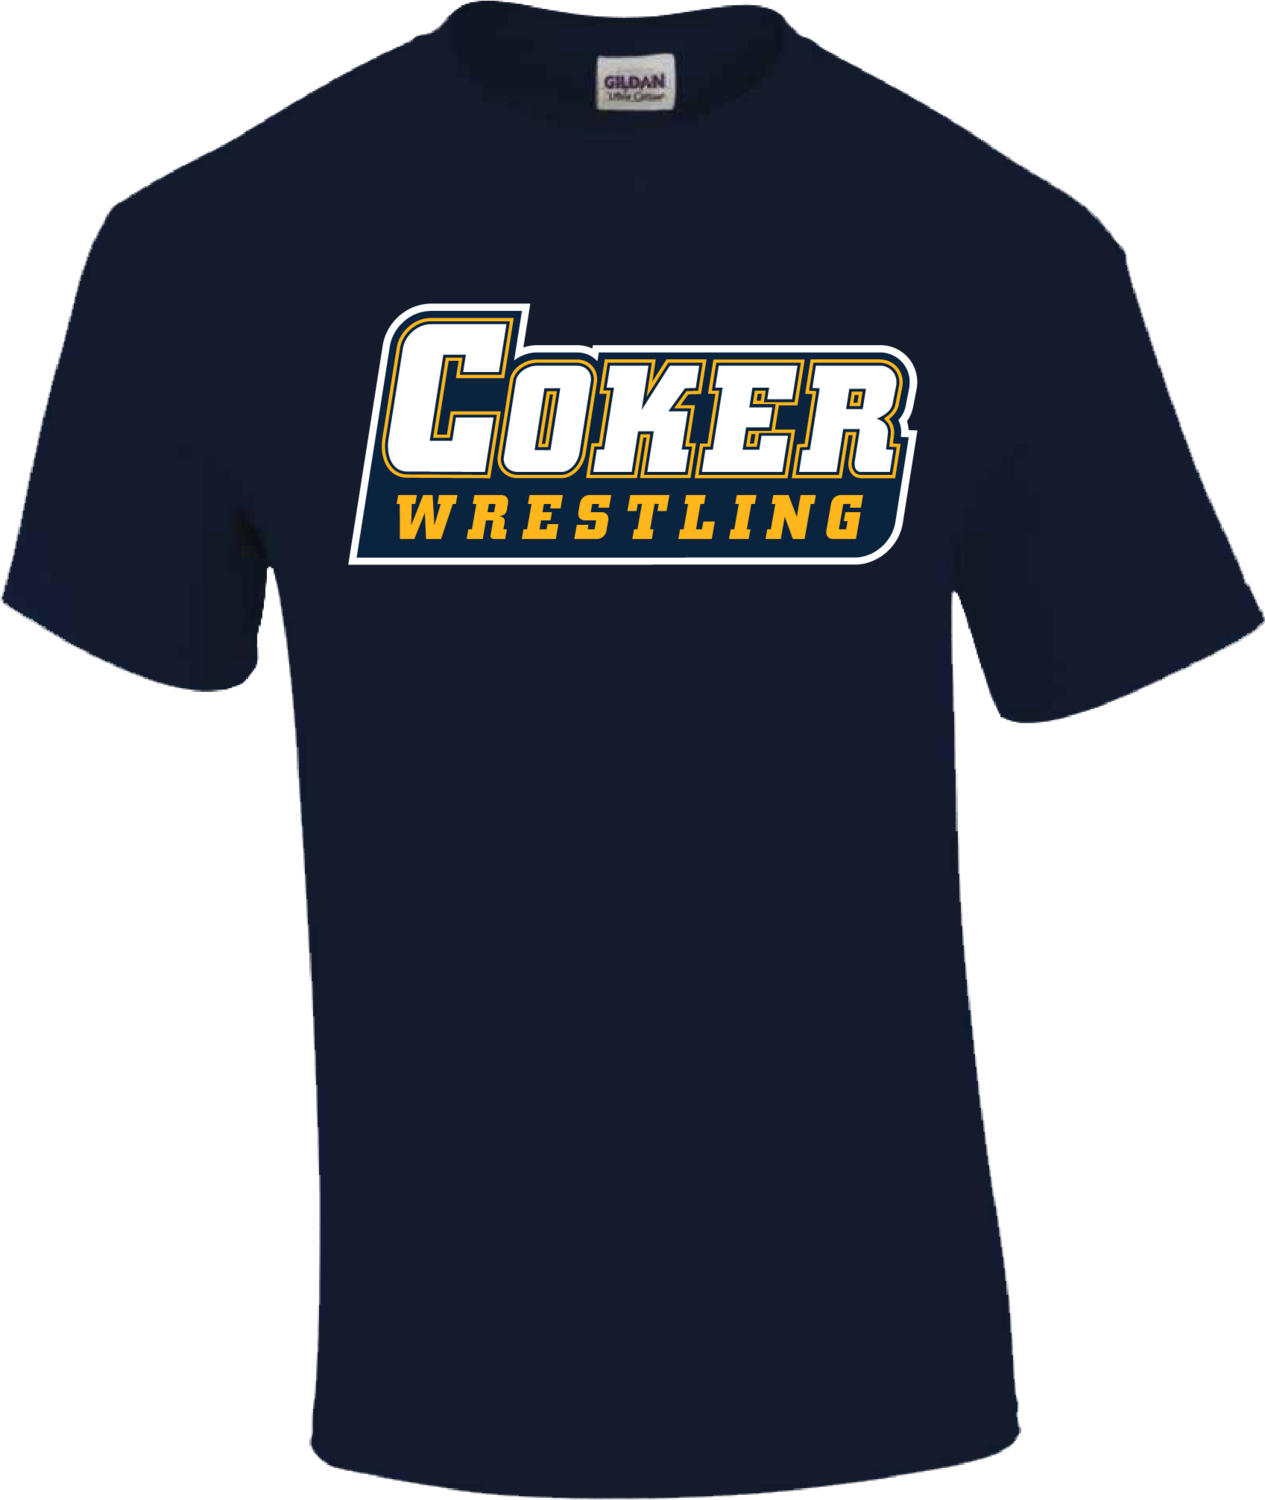 Gildan Coker Wrestling (Navy), size: Small